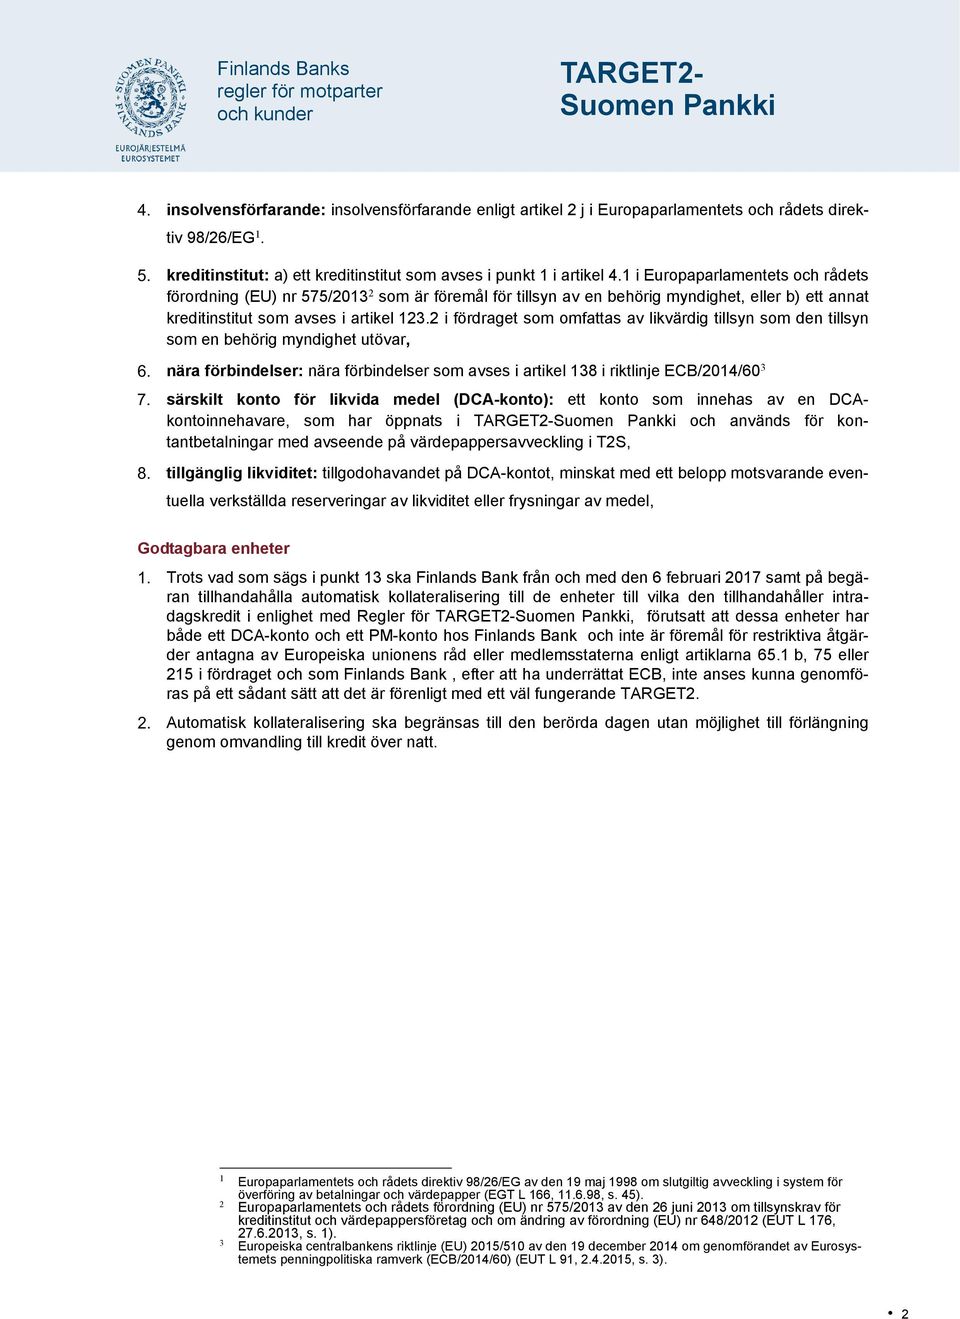 2 i fördraget som omfattas av likvärdig tillsyn som den tillsyn som en behörig myndighet utövar, nära förbindelser: nära förbindelser som avses i artikel 138 i riktlinje ECB/2014/60 3 särskilt konto